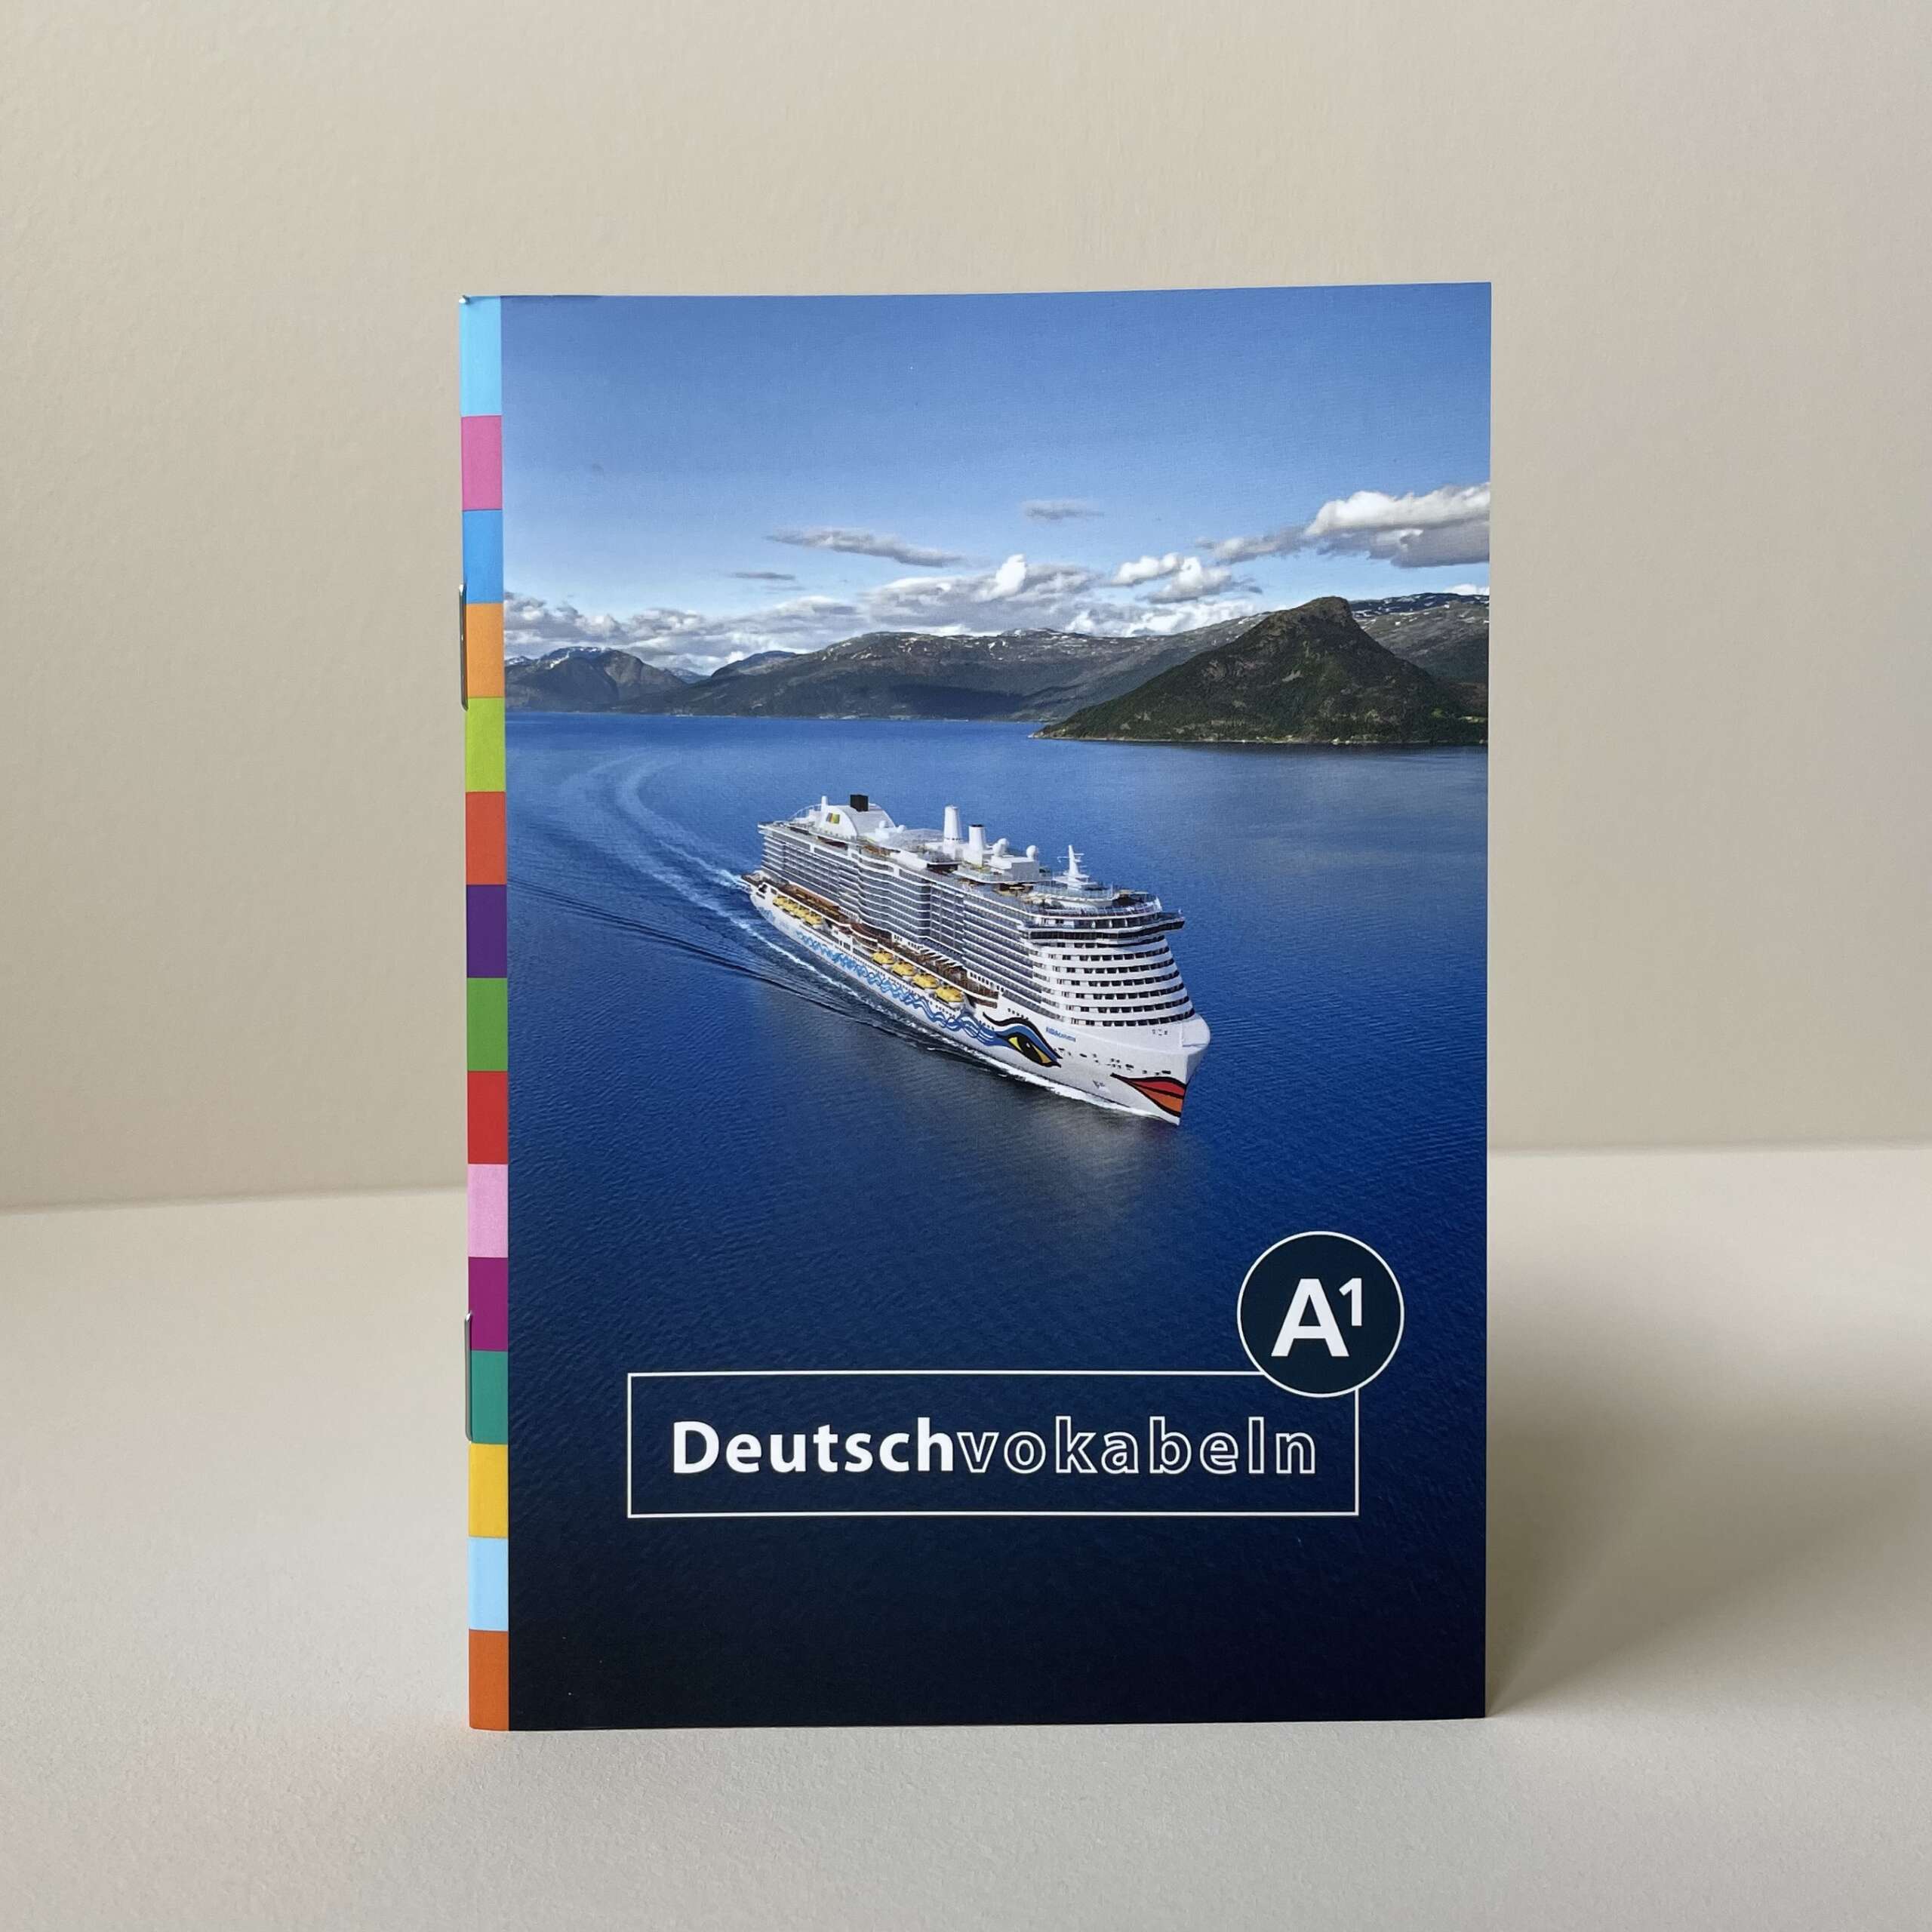 Titel des Buches Deutschvokabeln, das auf den AIDA-Schiffen vom Personal verwendet wird